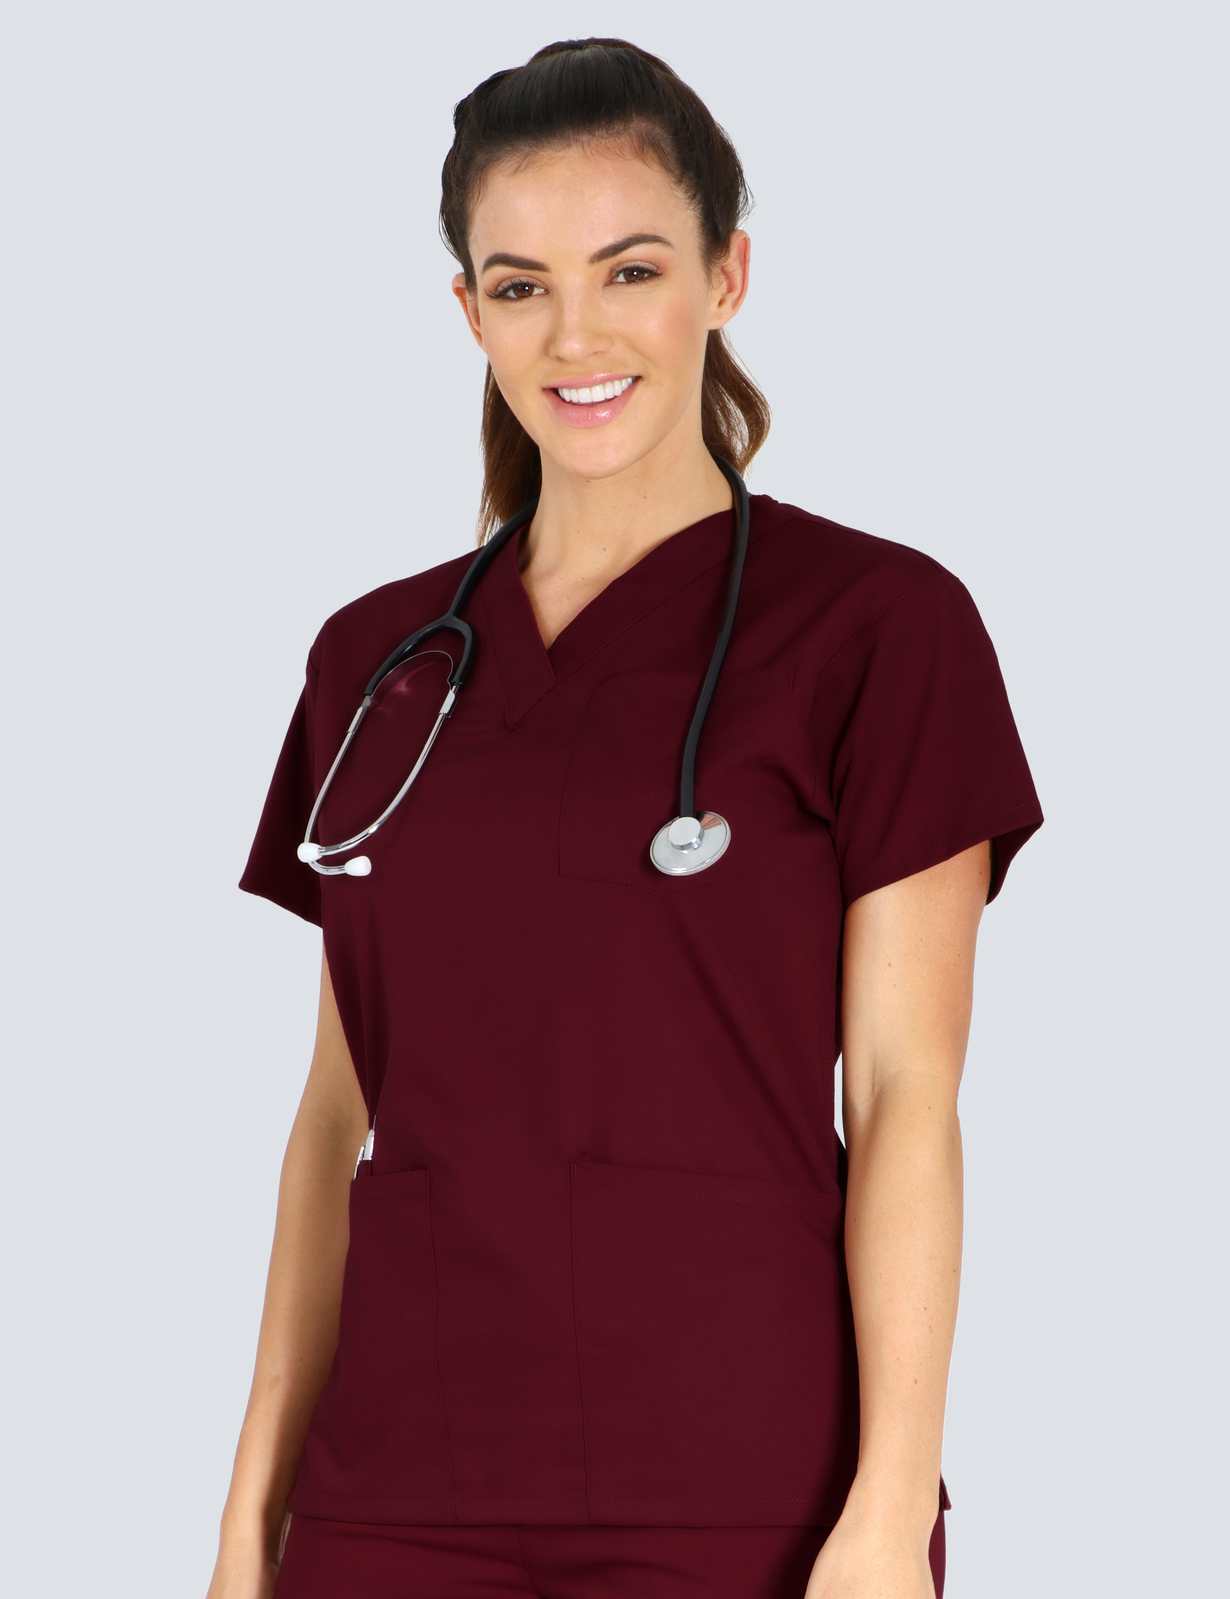 Queensland Children's Hospital Emergency Department Senior Medical Officer Uniform Top Bundle  (4 Pocket Top in Burgundy  incl Logos)